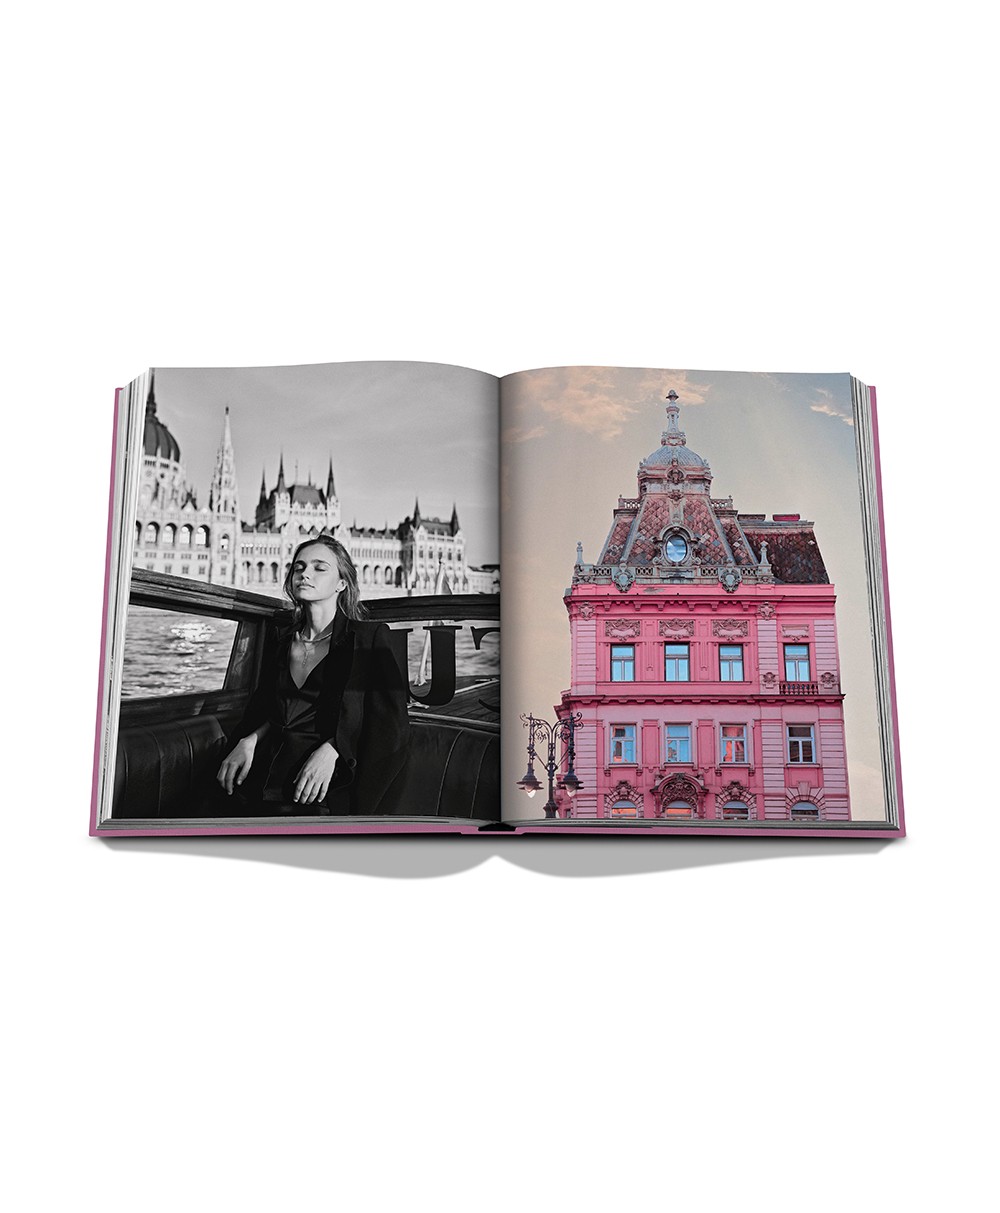 Das Produktbild zeigt den Bildband „Budapest Gem“ von Assouline - RAUM concept store